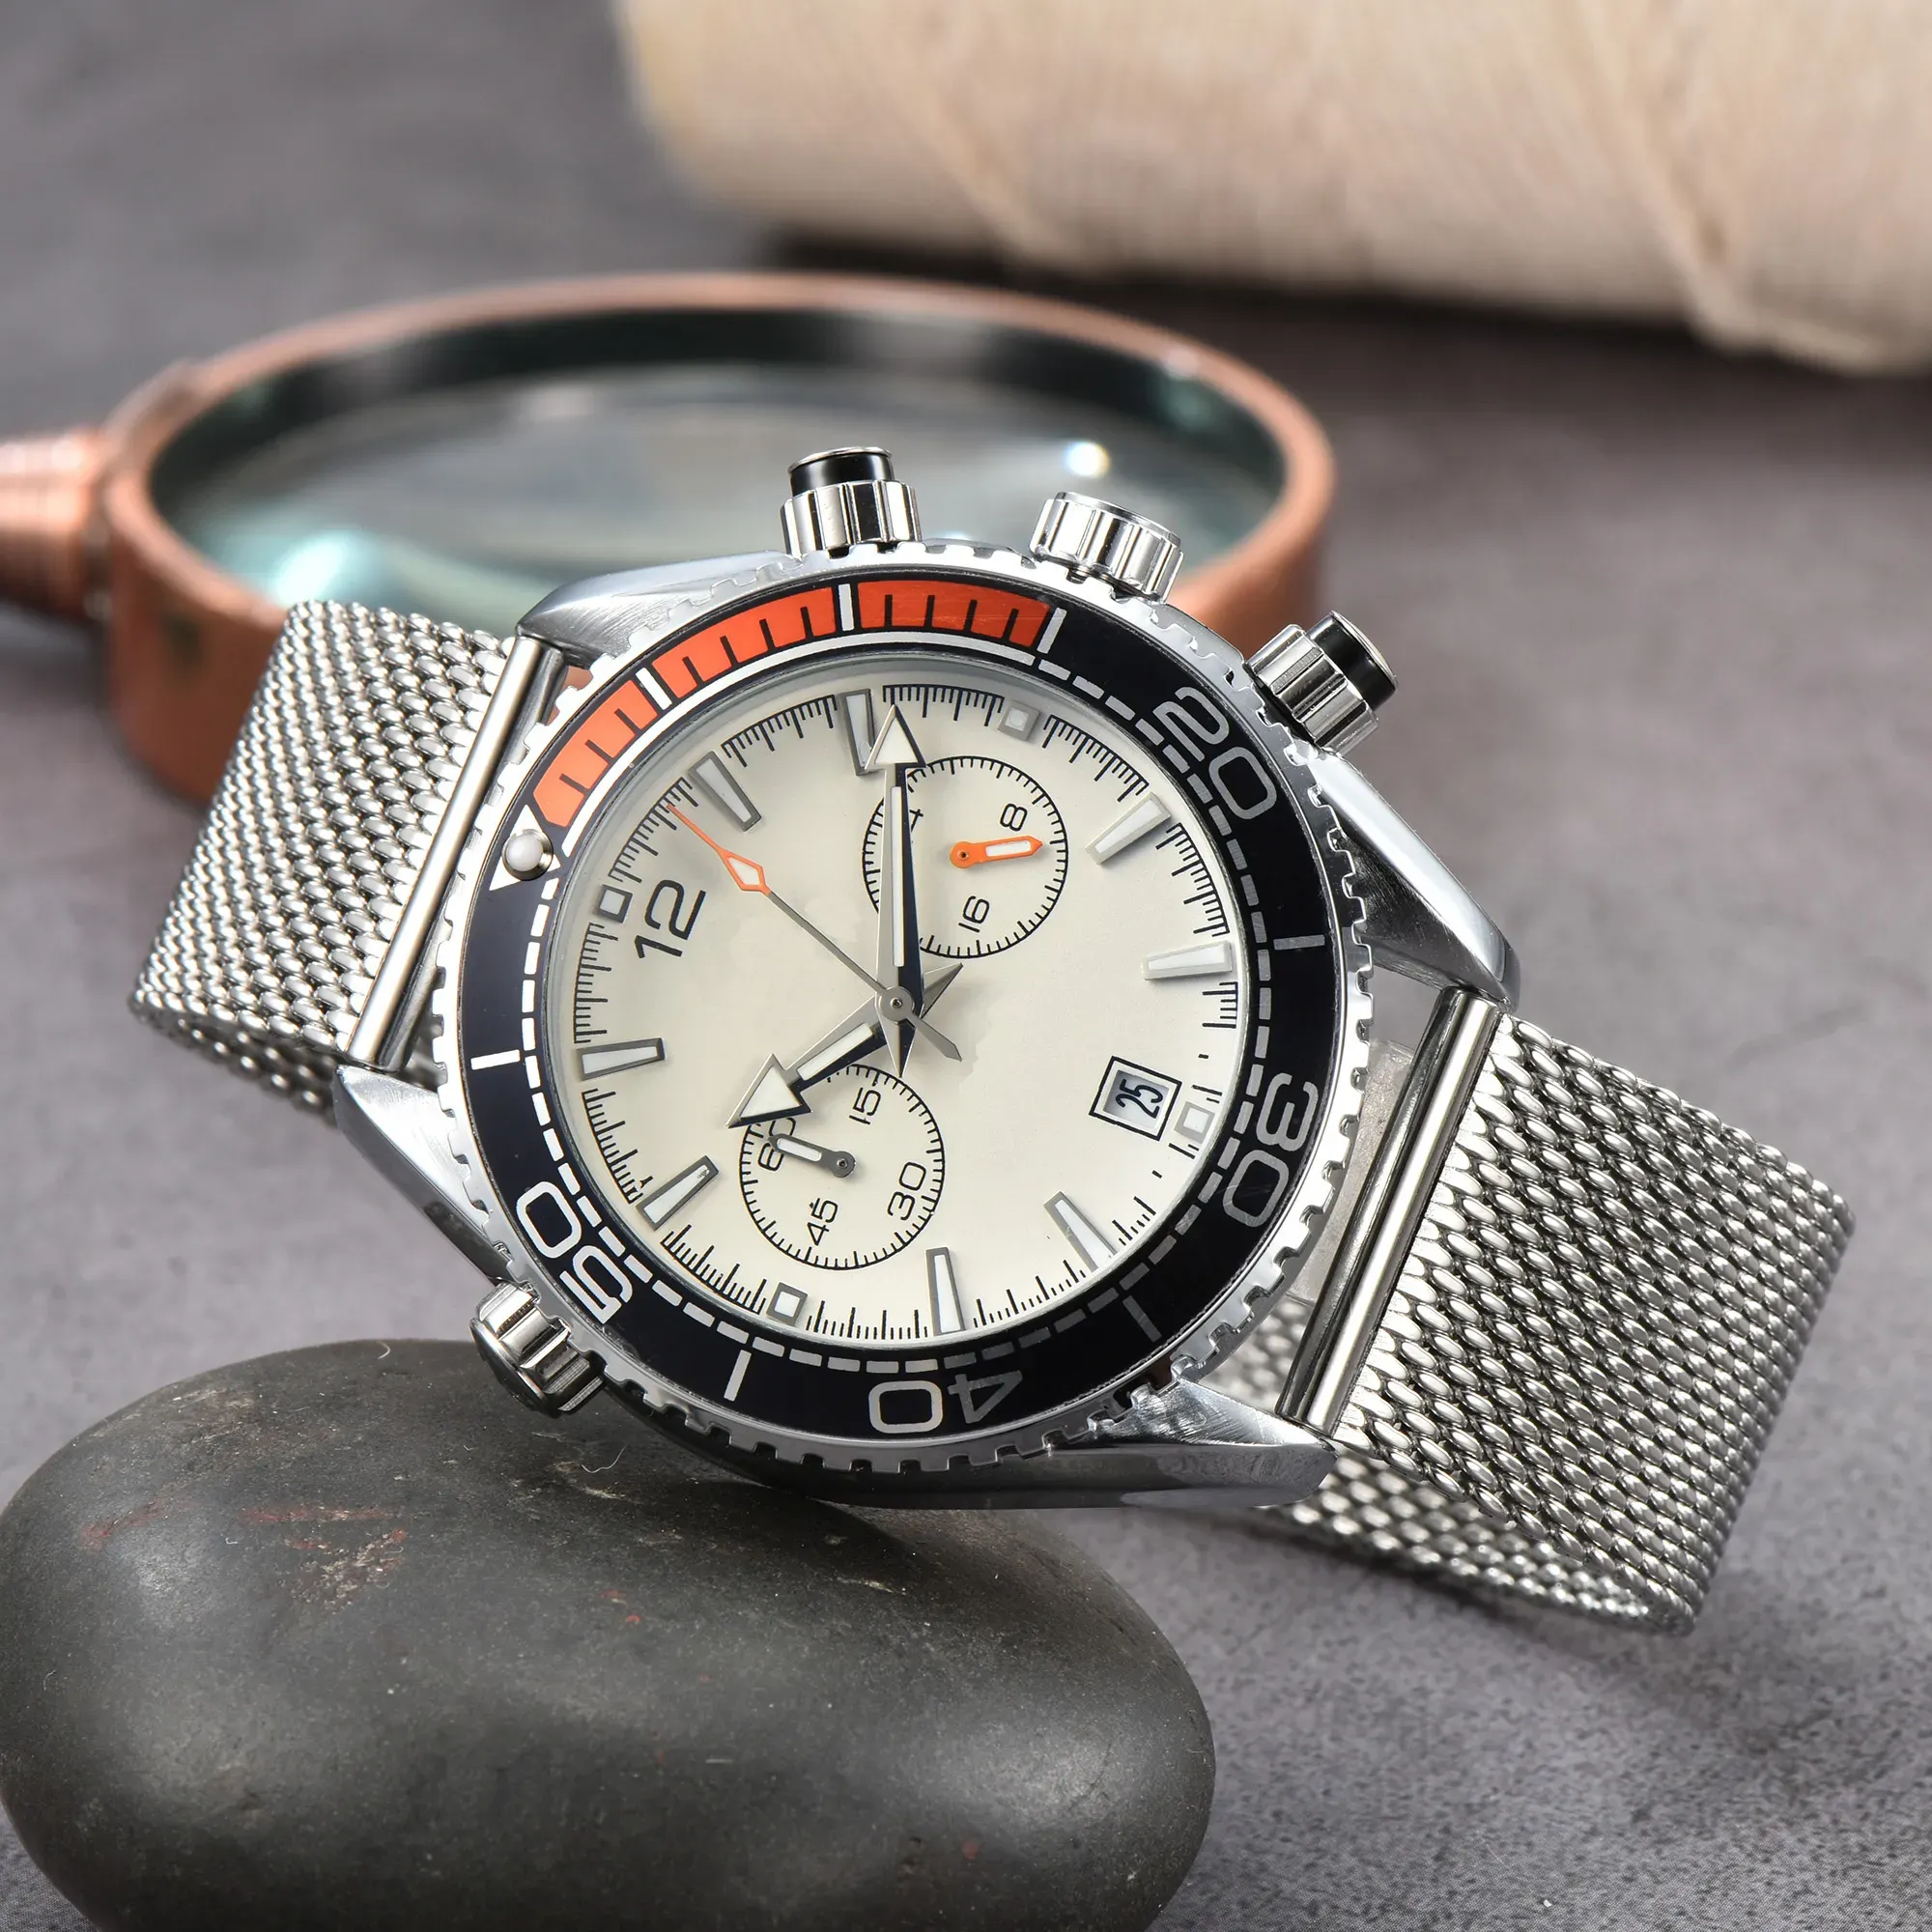 Luxus Omegor Neue Marke Original Business Männer Uhr Klassische Runde Gehäuse Quarzuhr Armbanduhr Uhr AA Empfohlen Uhr für Casual